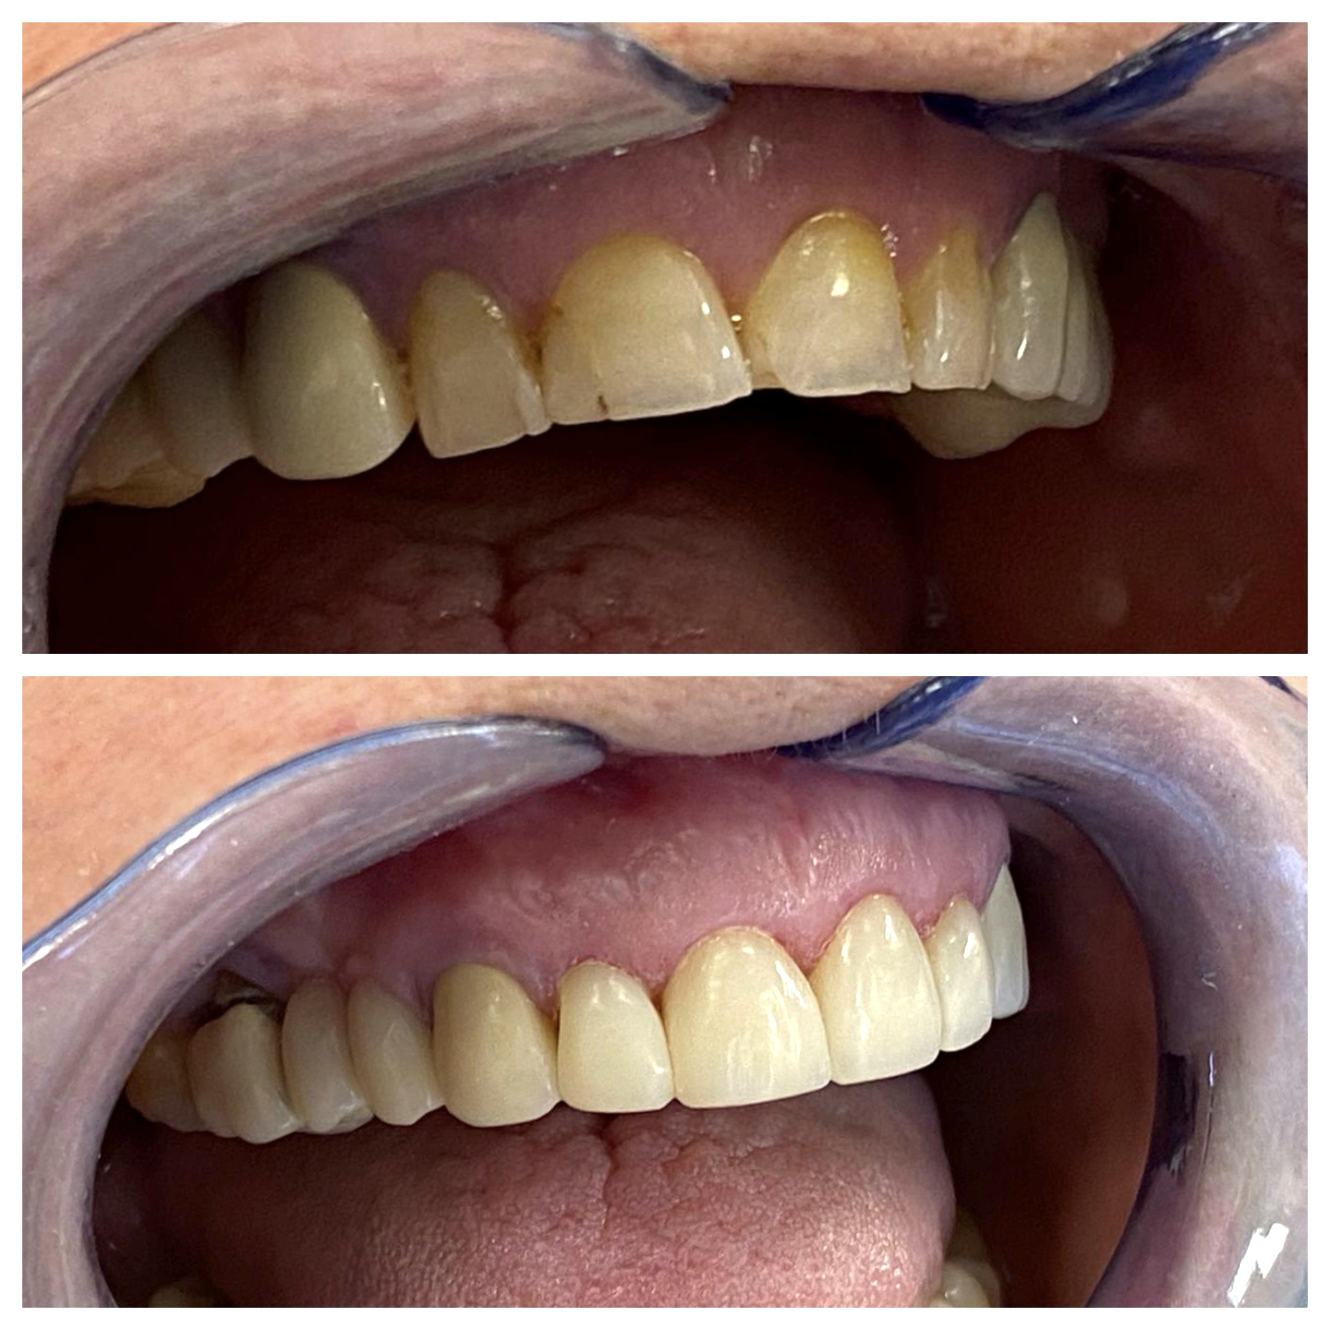 Flow injection – przywrócenie estetyki i funkcji zębów (zmiana wysokości zwarcia) za pomocą odpowiednich kompozytów w Klinice Bodent.
